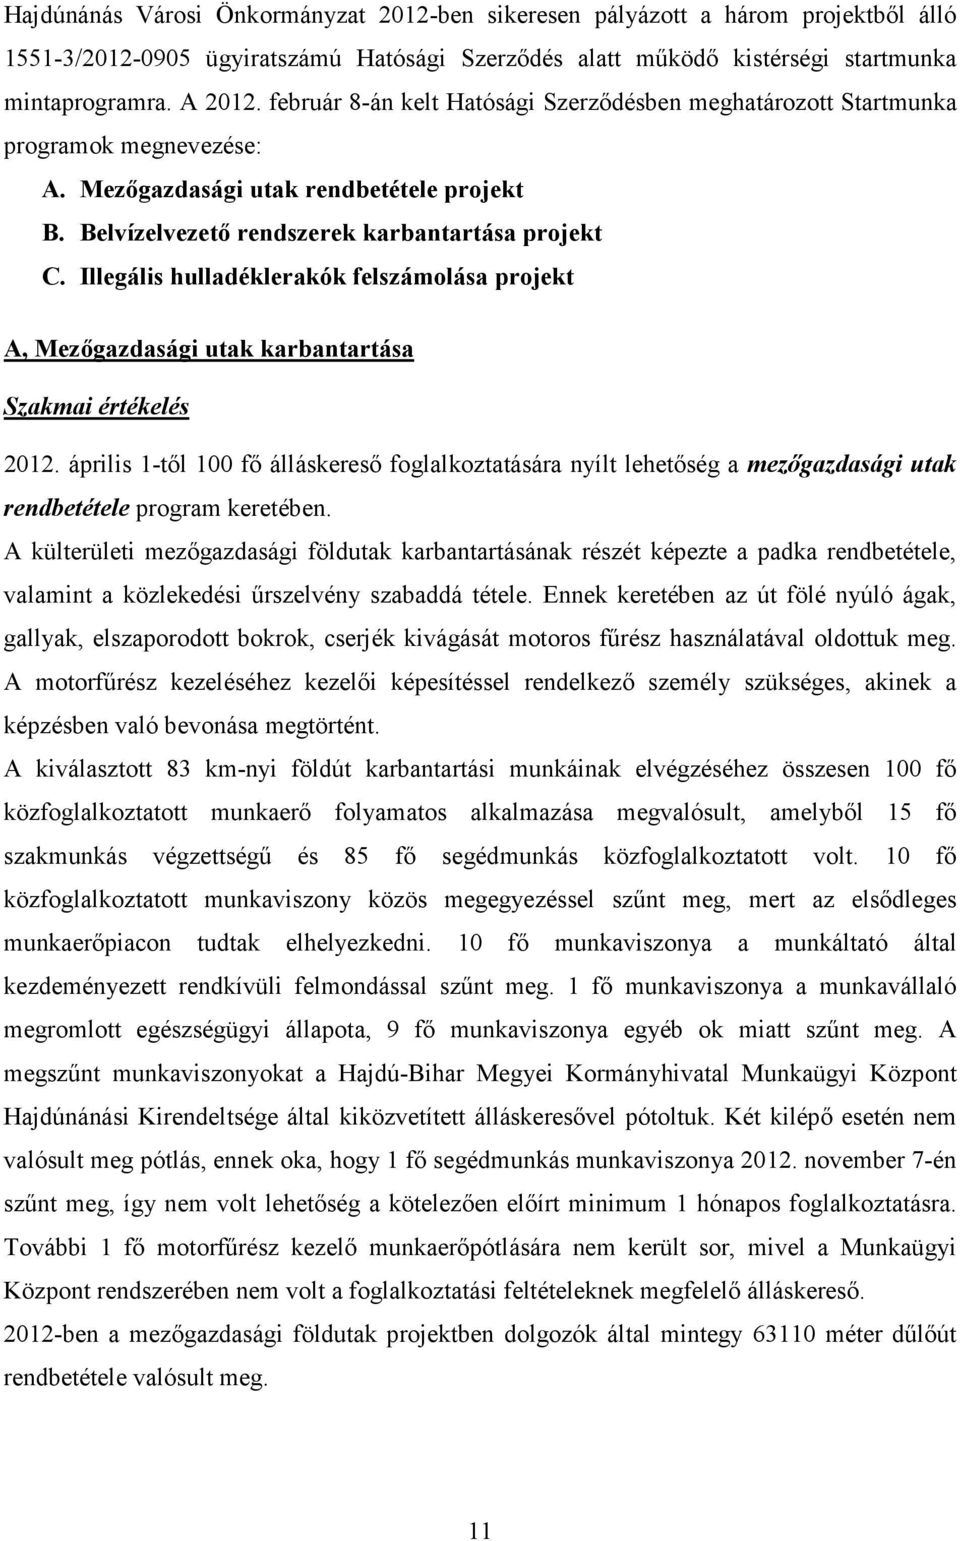 Illegális hulladéklerakók felszámolása projekt A, Mezıgazdasági utak karbantartása Szakmai értékelés 2012.